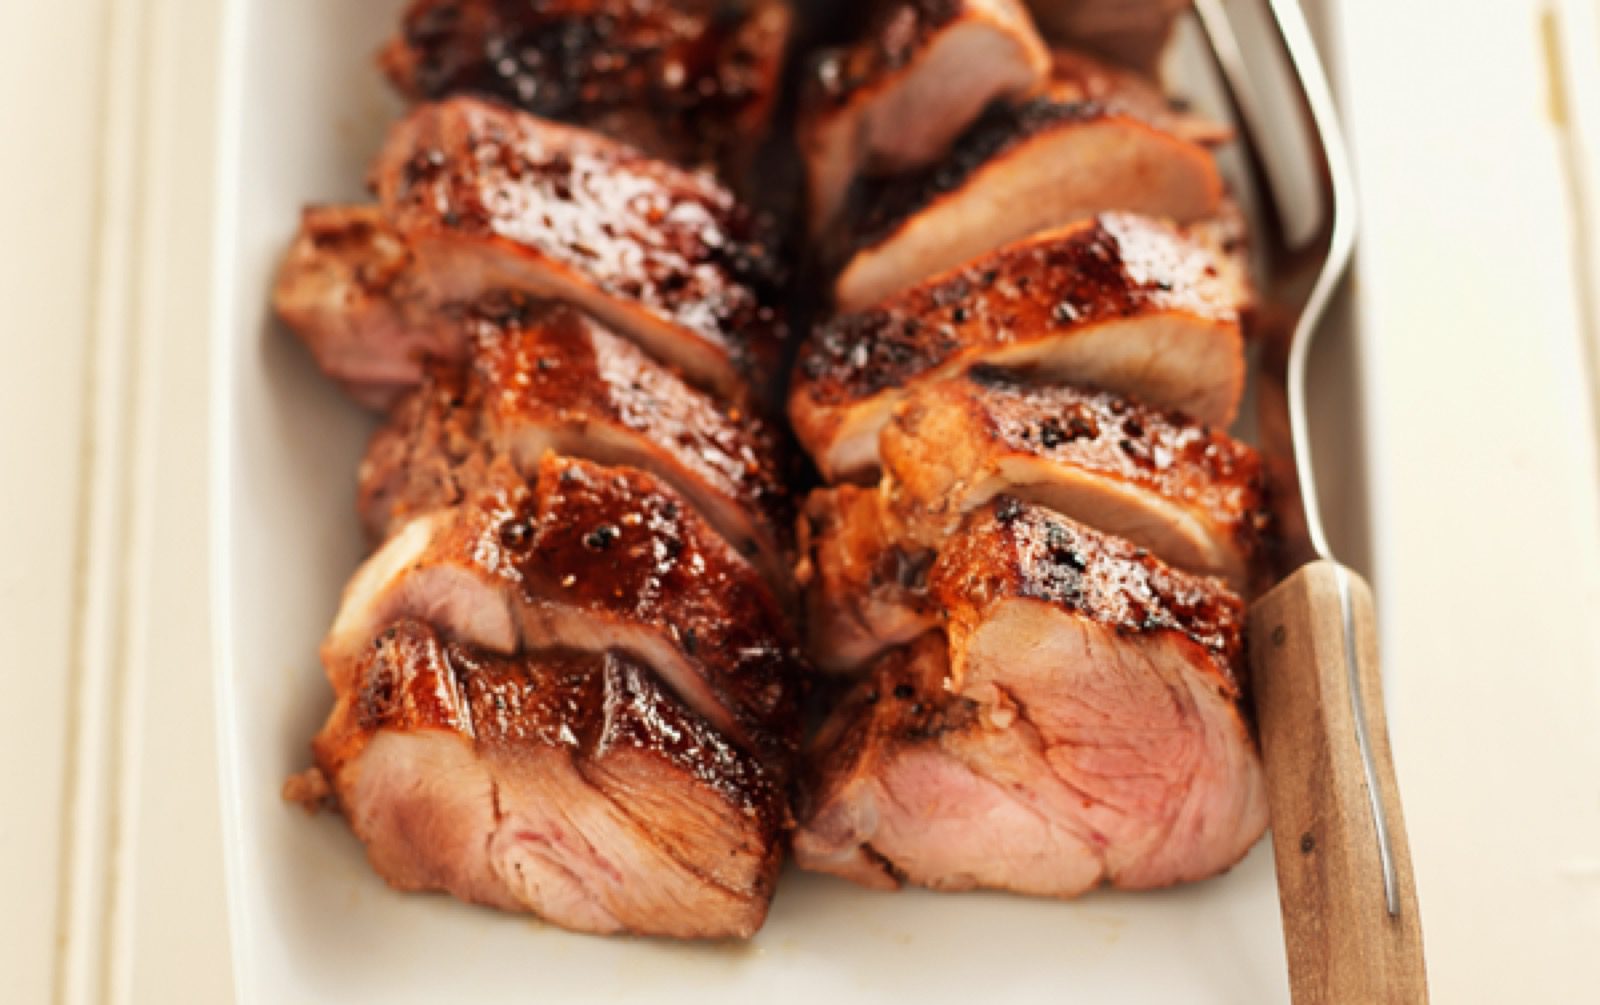 Mausta porsaanliha vahvalla ja erilaisella piripiri-kastikkeella. Tulinen grillikylki maustetaan Kasvisfondilla ja tarjoillaan lohkoperunoiden kanssa.